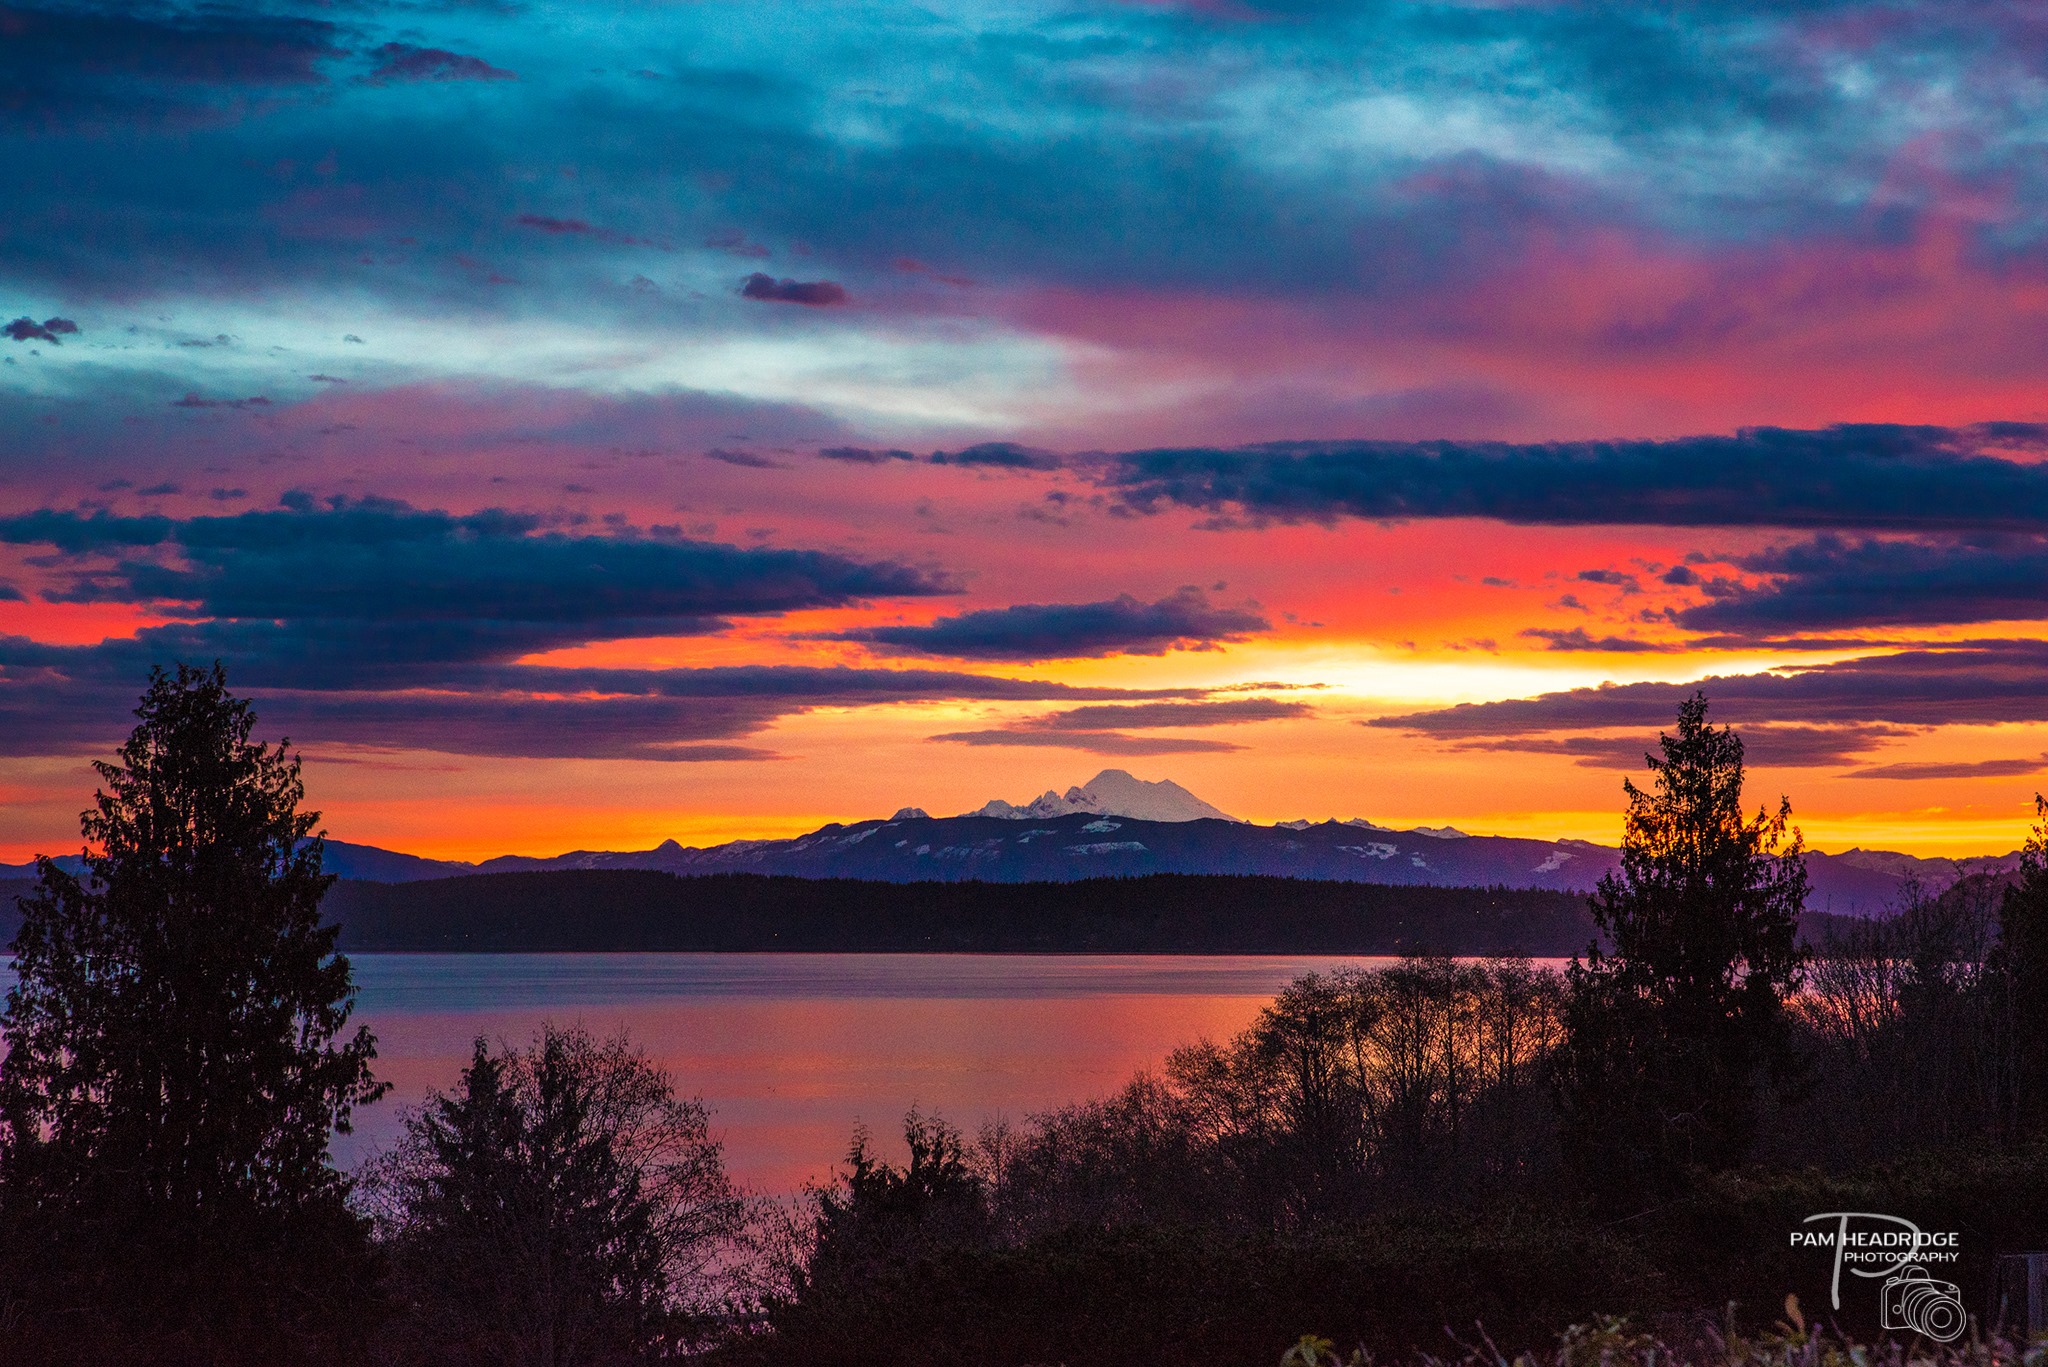 Photos: Spectacular sunrise graces Northwest skies | KOMO